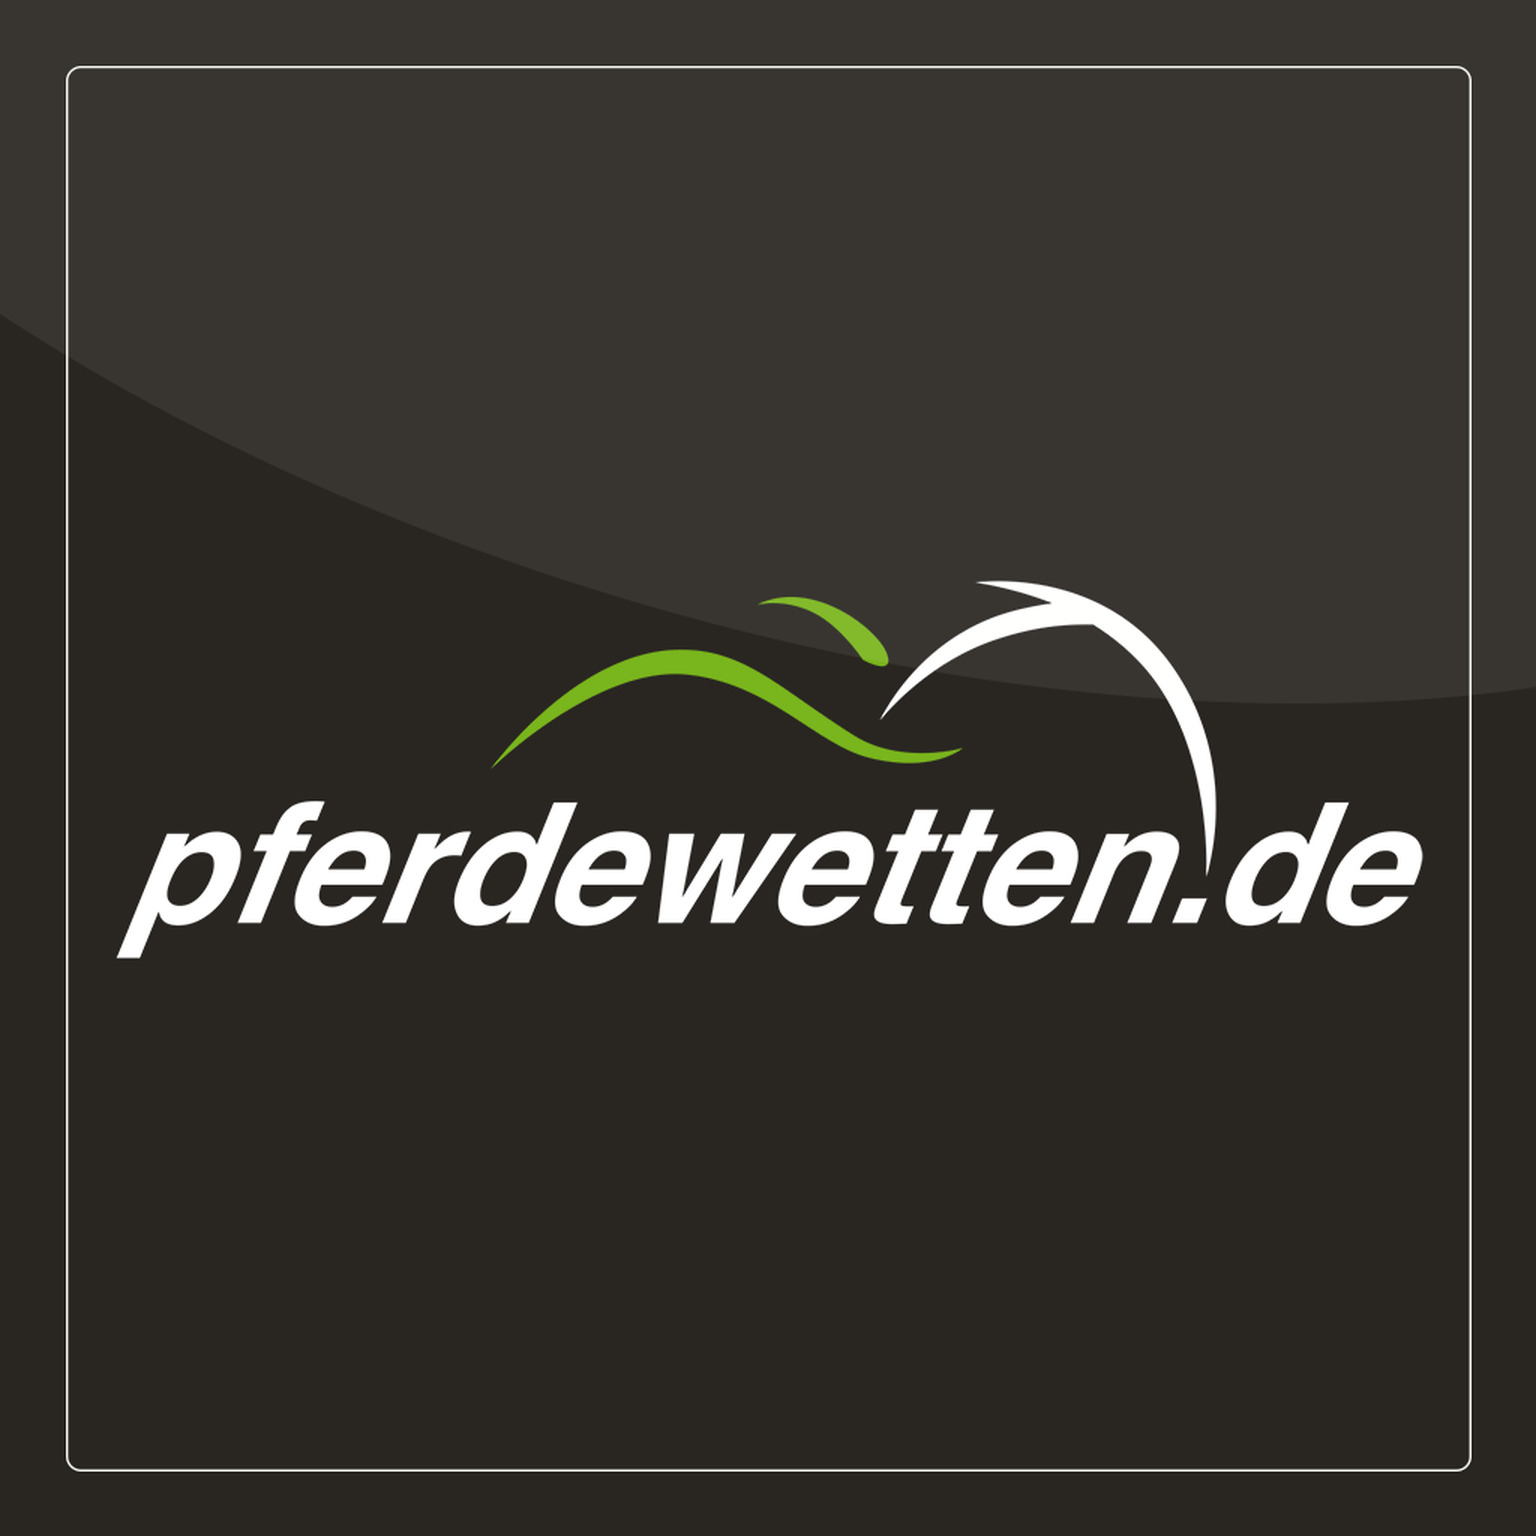 pferdewetten.de logo